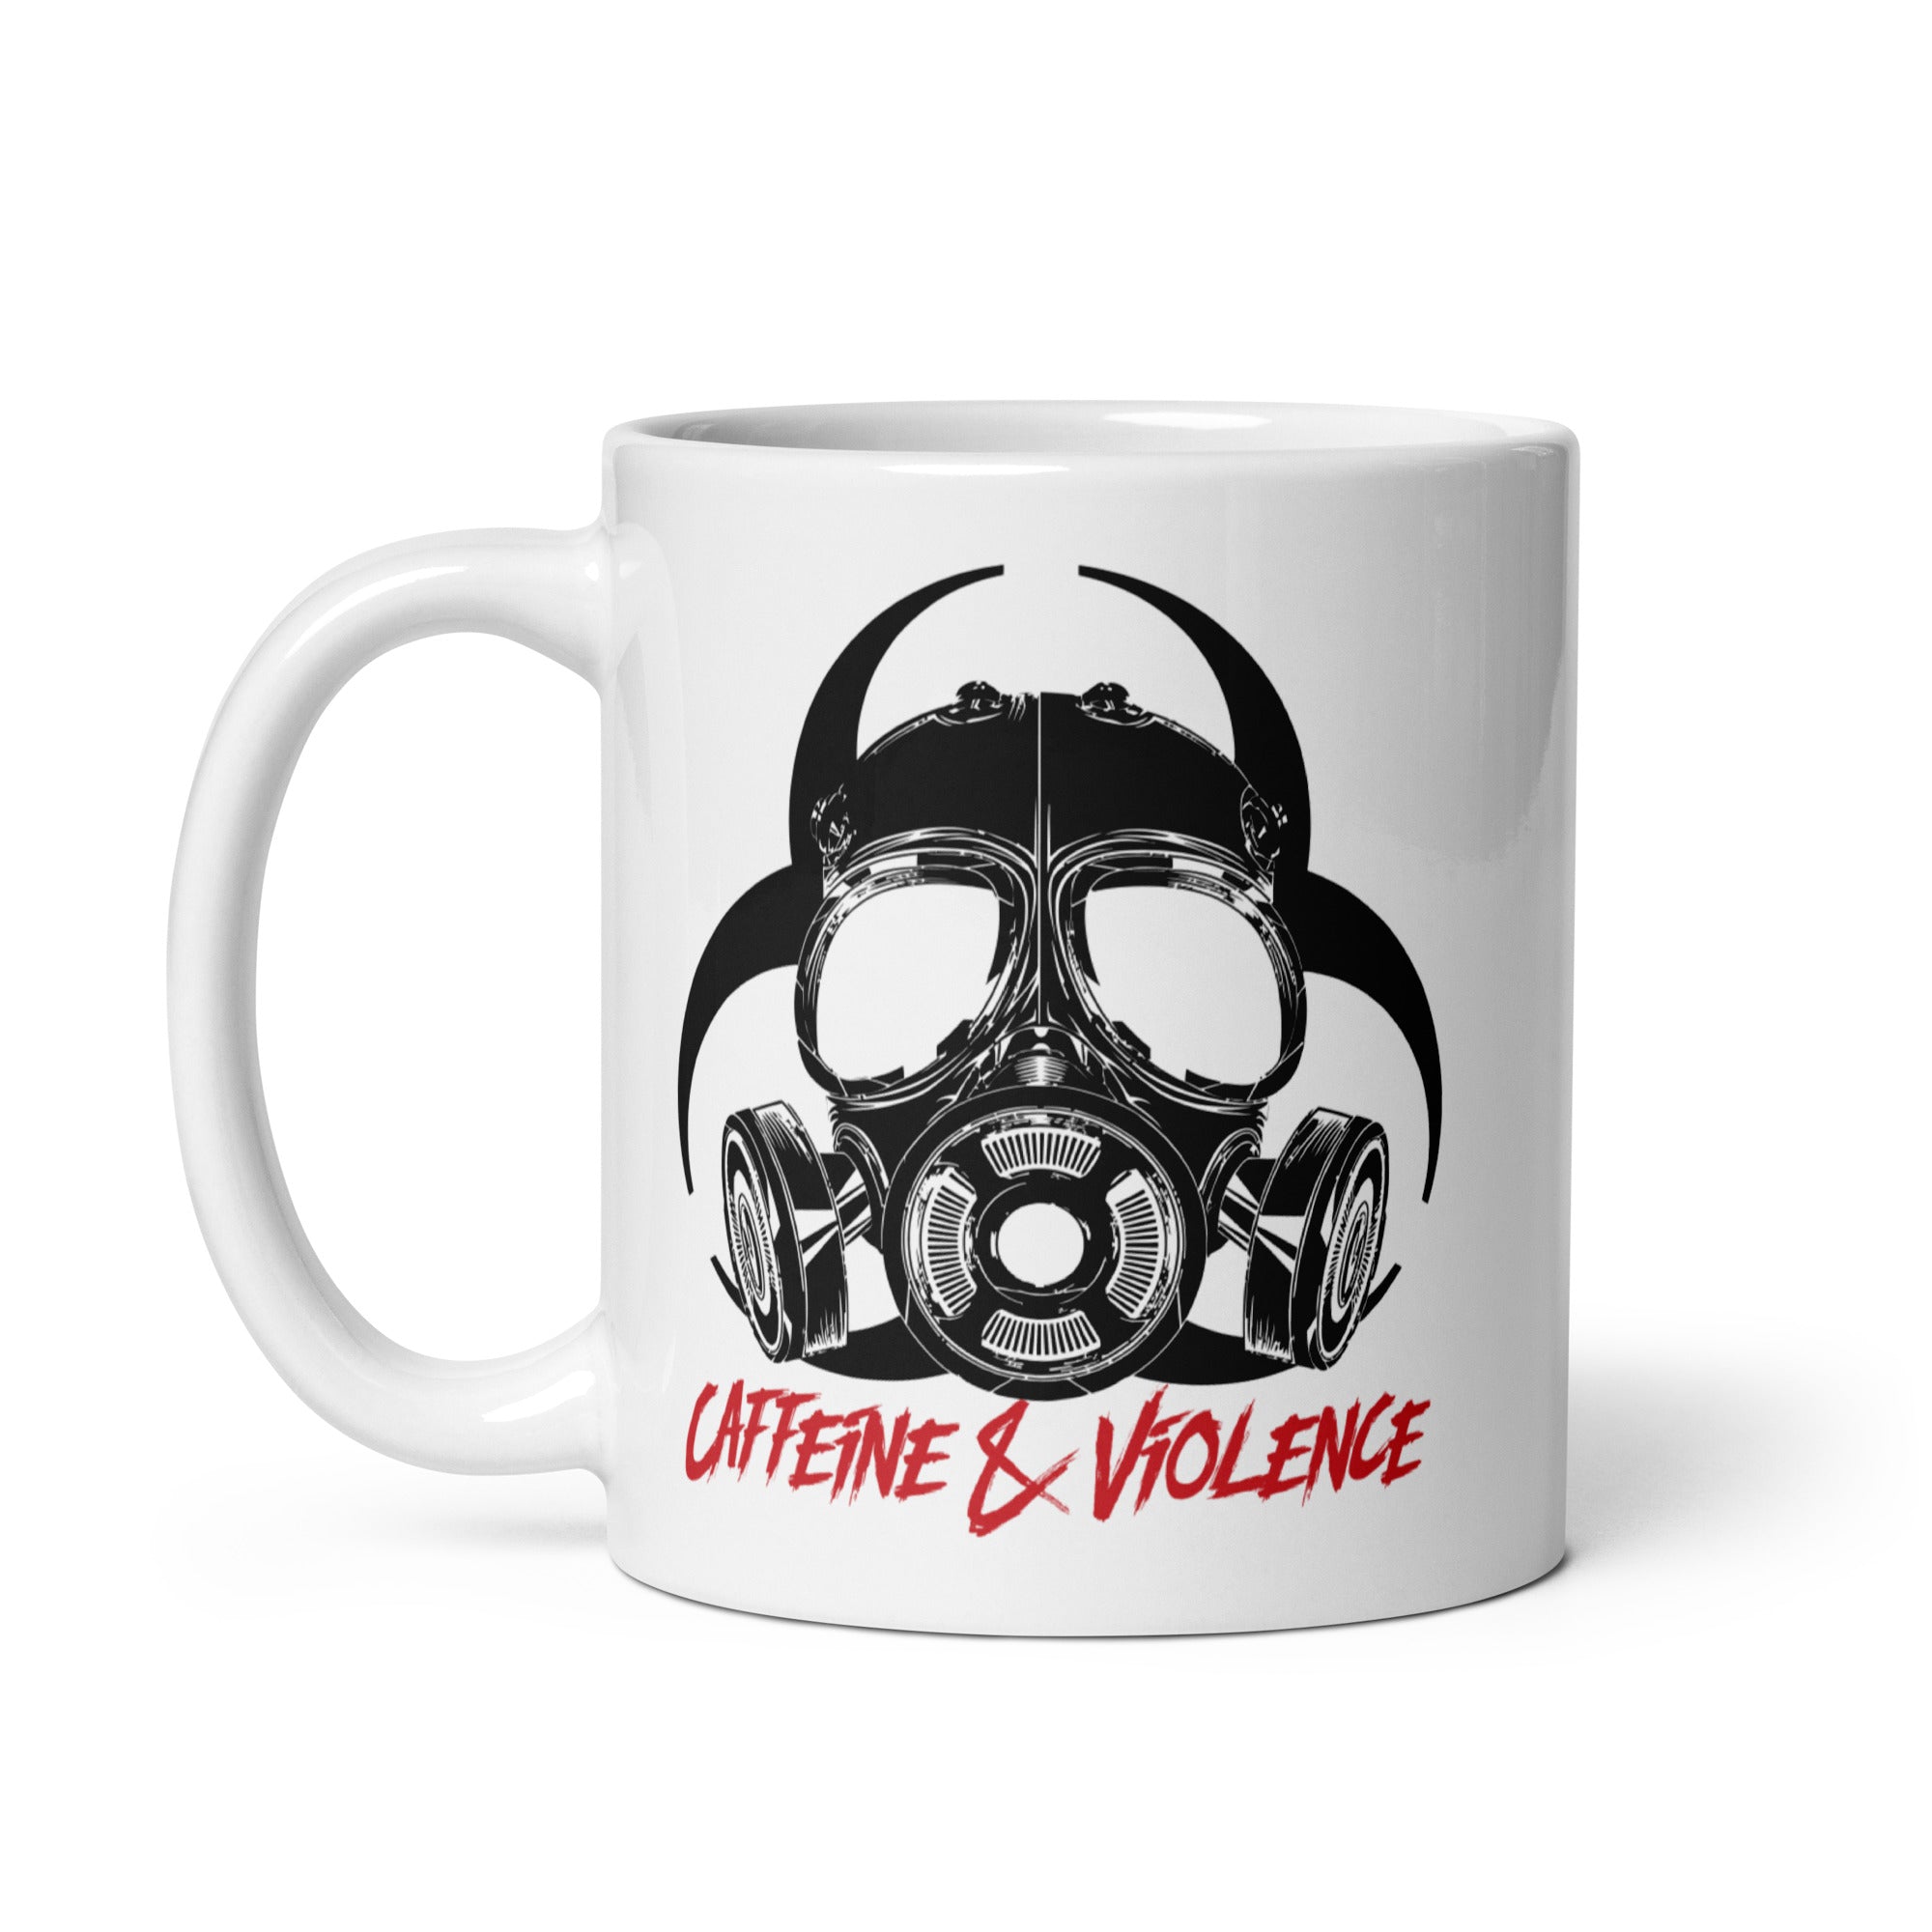 Caffeine & Violence White Mug